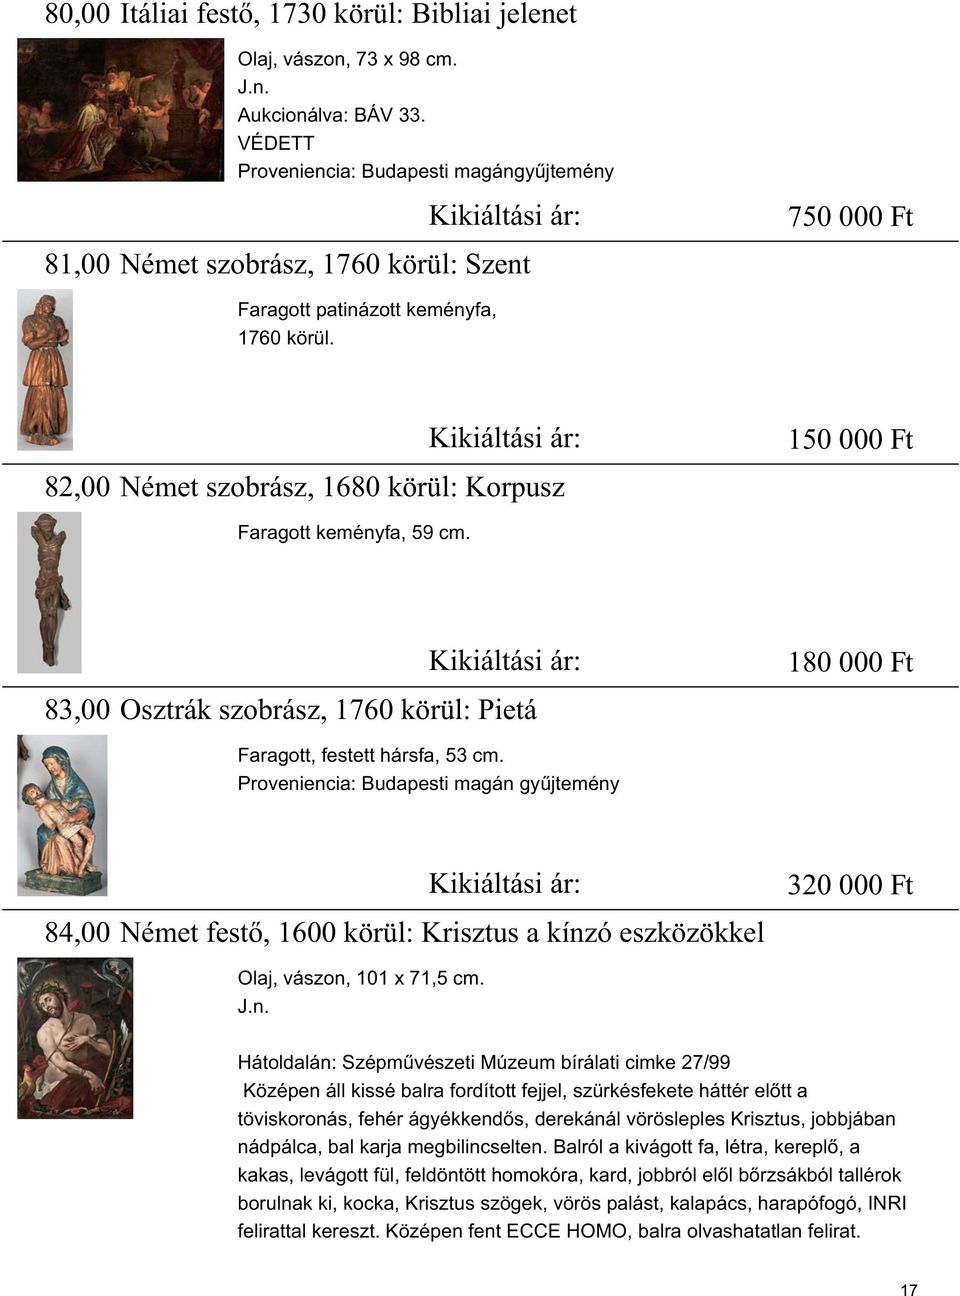 82,00 Német szobrász, 1680 körül: Korpusz Kikiáltási ár: 150 000 Ft Faragott keményfa, 59 cm. 83,00 Osztrák szobrász, 1760 körül: Pietá Kikiáltási ár: 180 000 Ft Faragott, festett hársfa, 53 cm.